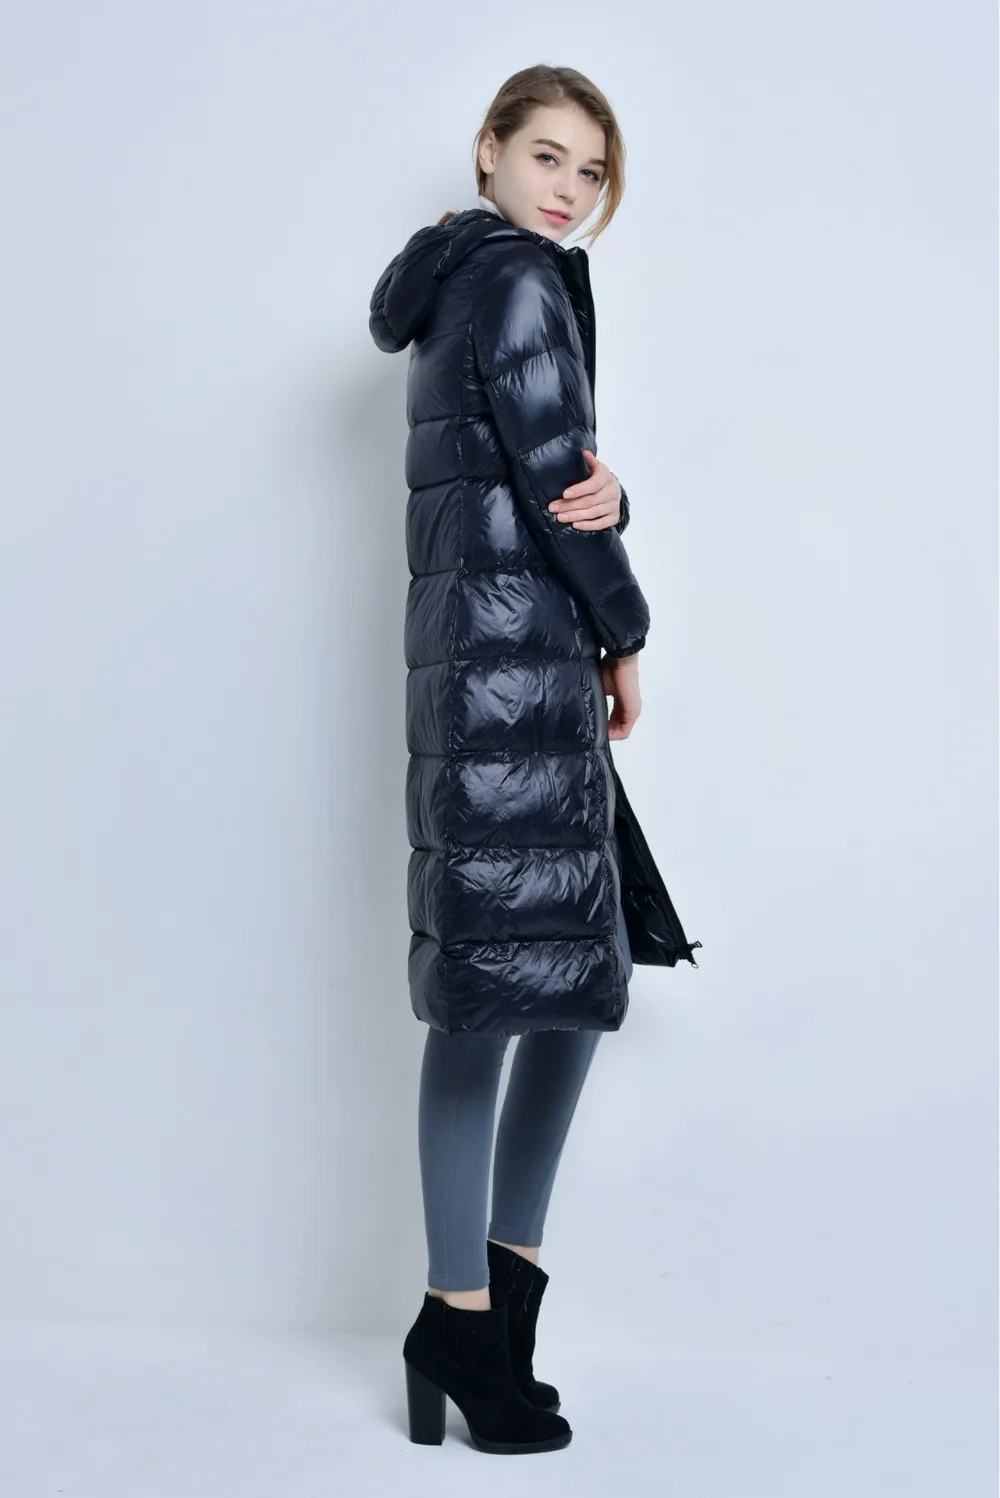 Зимняя женская куртка, ветрозащитный Теплый ультра-светильник, длинный женский пуховик, зимние парки, женские парки размера плюс 3XL